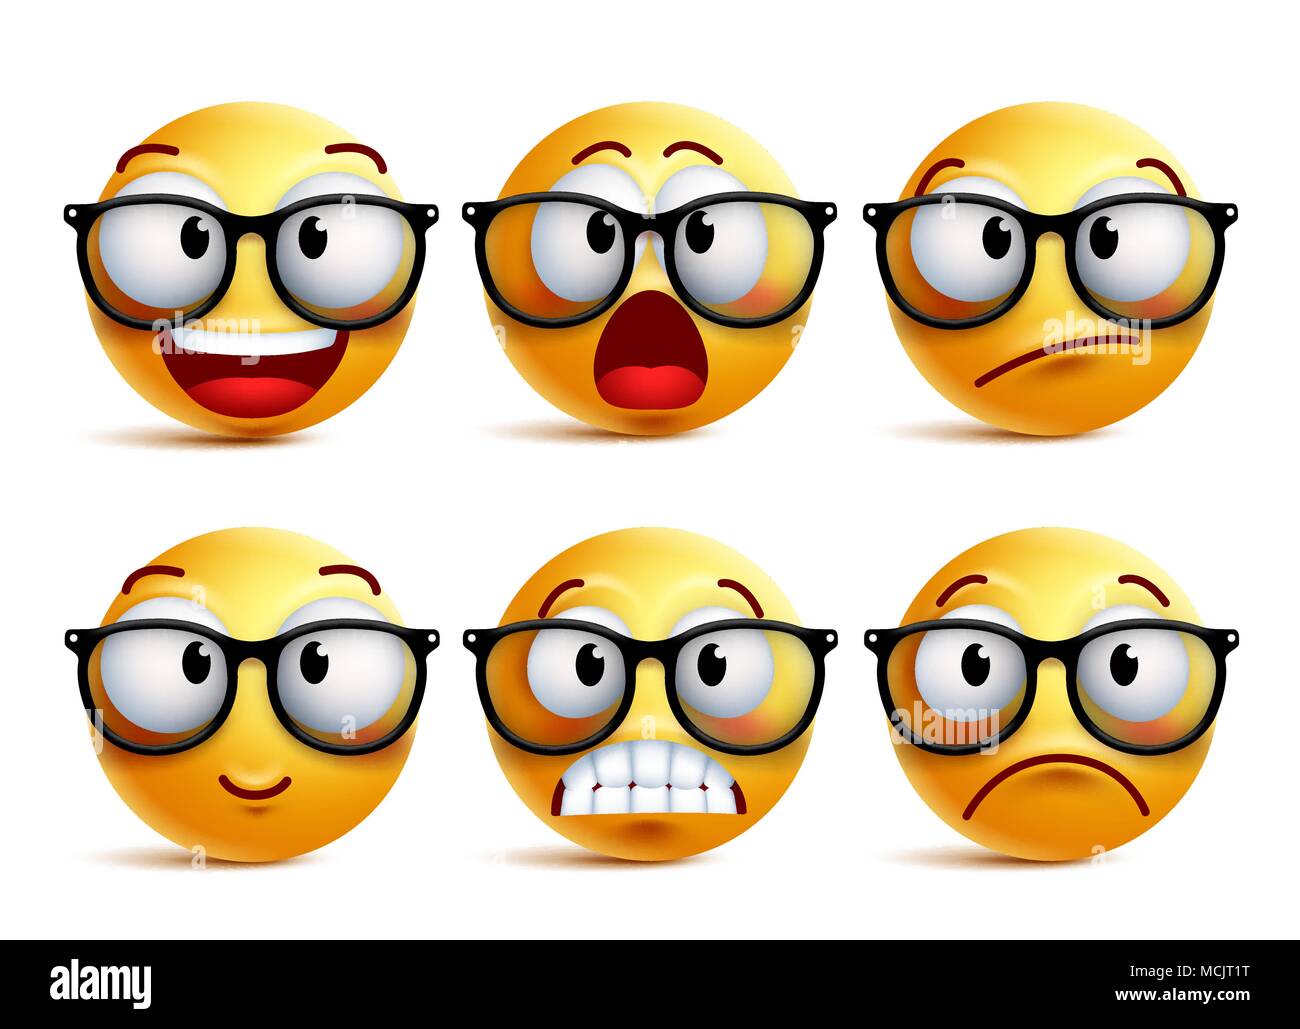 Smiley Vektor einrichten von gelben nerd Emoticons mit Brillen und lustige  Gesichtsausdrücke auf weißem Hintergrund. Vector Illustration  Stock-Vektorgrafik - Alamy